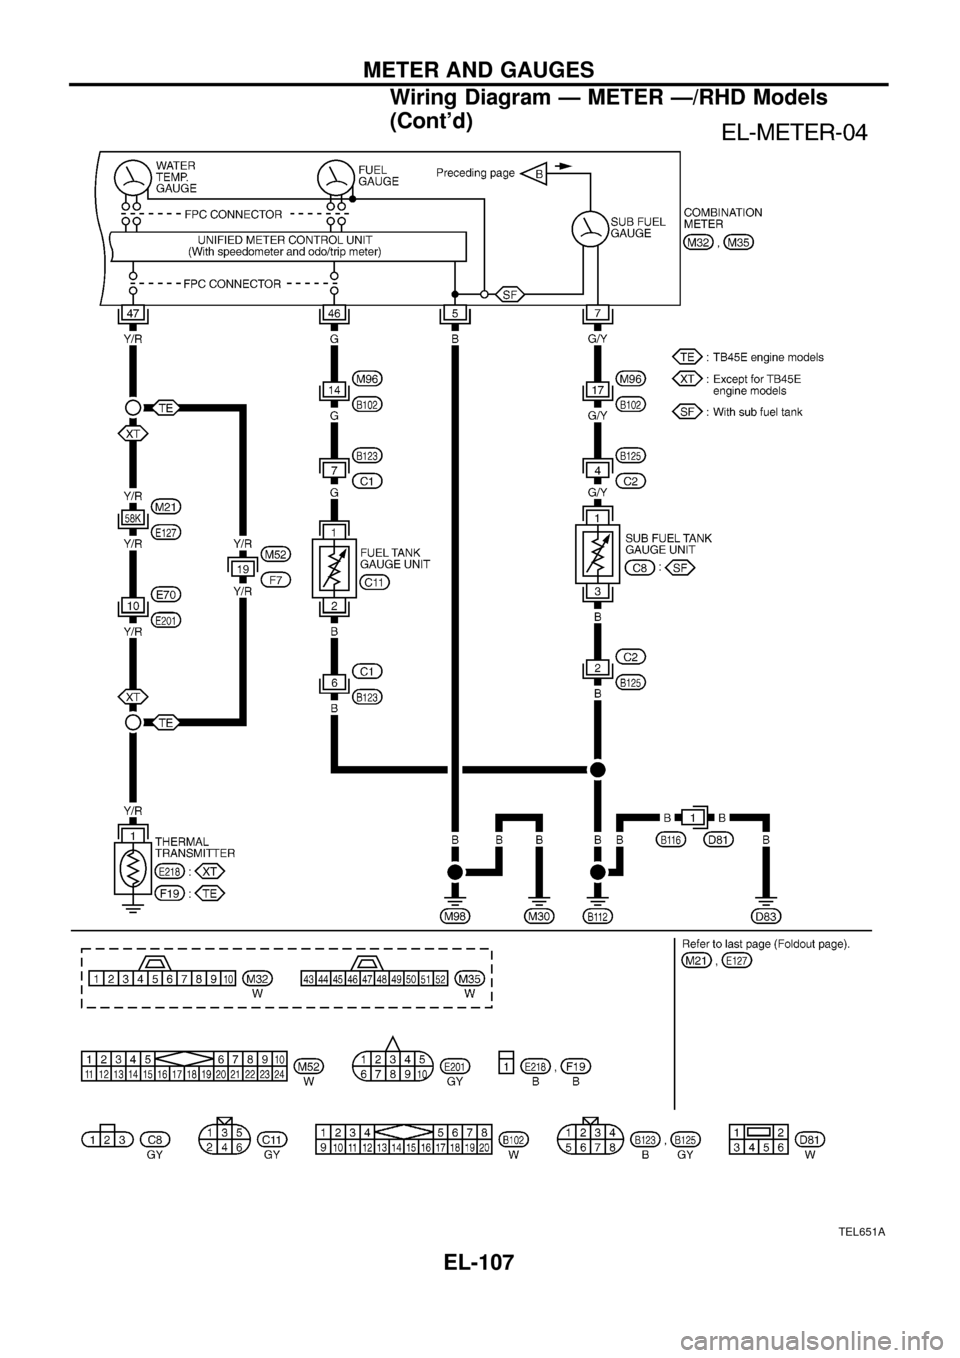 NISSAN PATROL 1998 Y61 / 5.G Electrical System Service Manual TEL651A
METER AND GAUGES
Wiring Diagram Ð METER Ð/RHD Models
(Contd)
EL-107 